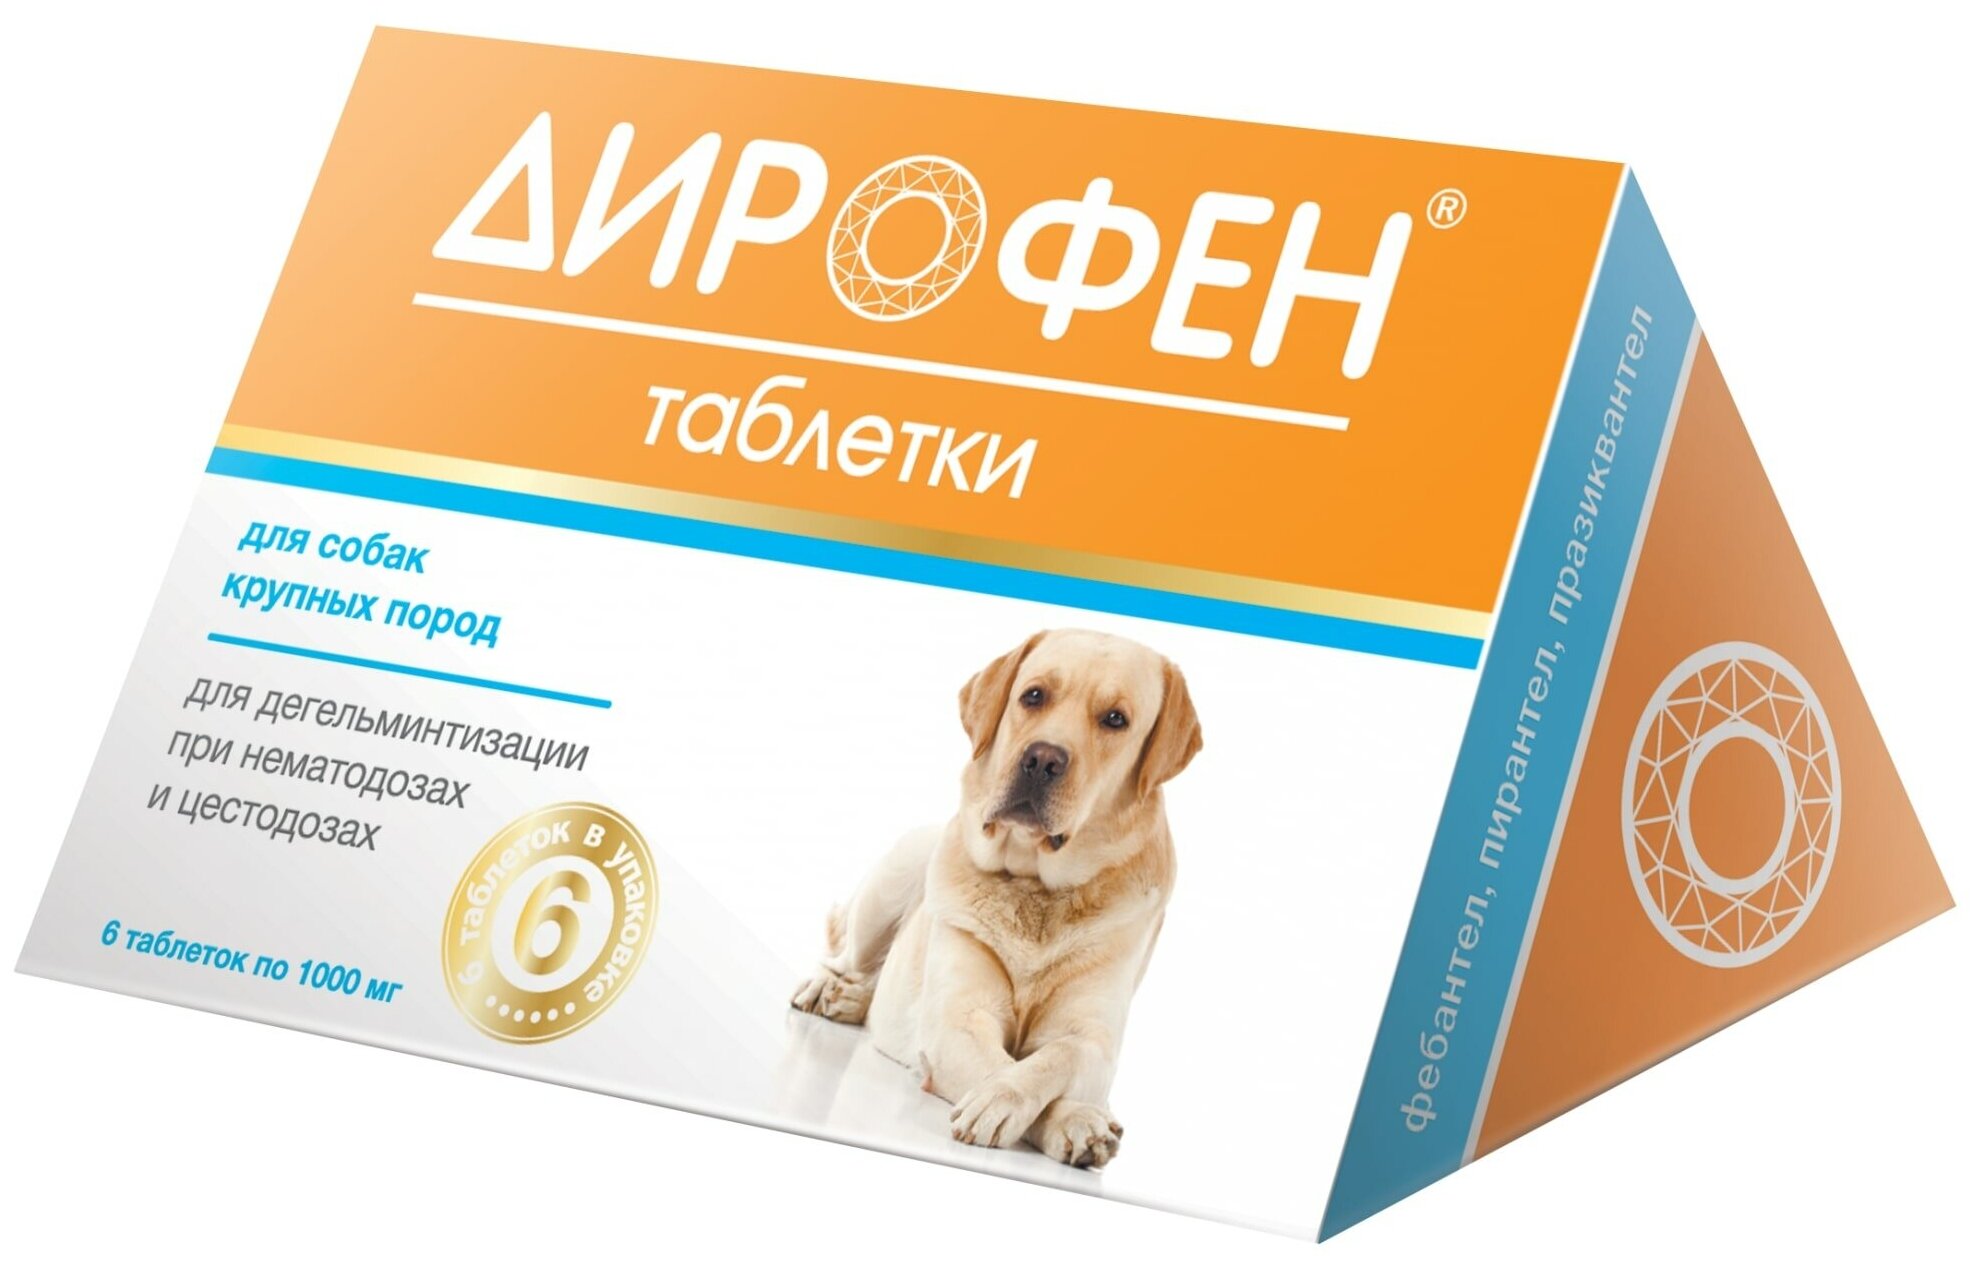 Apicenna Дирофен Плюс таблетки для собак крупных пород